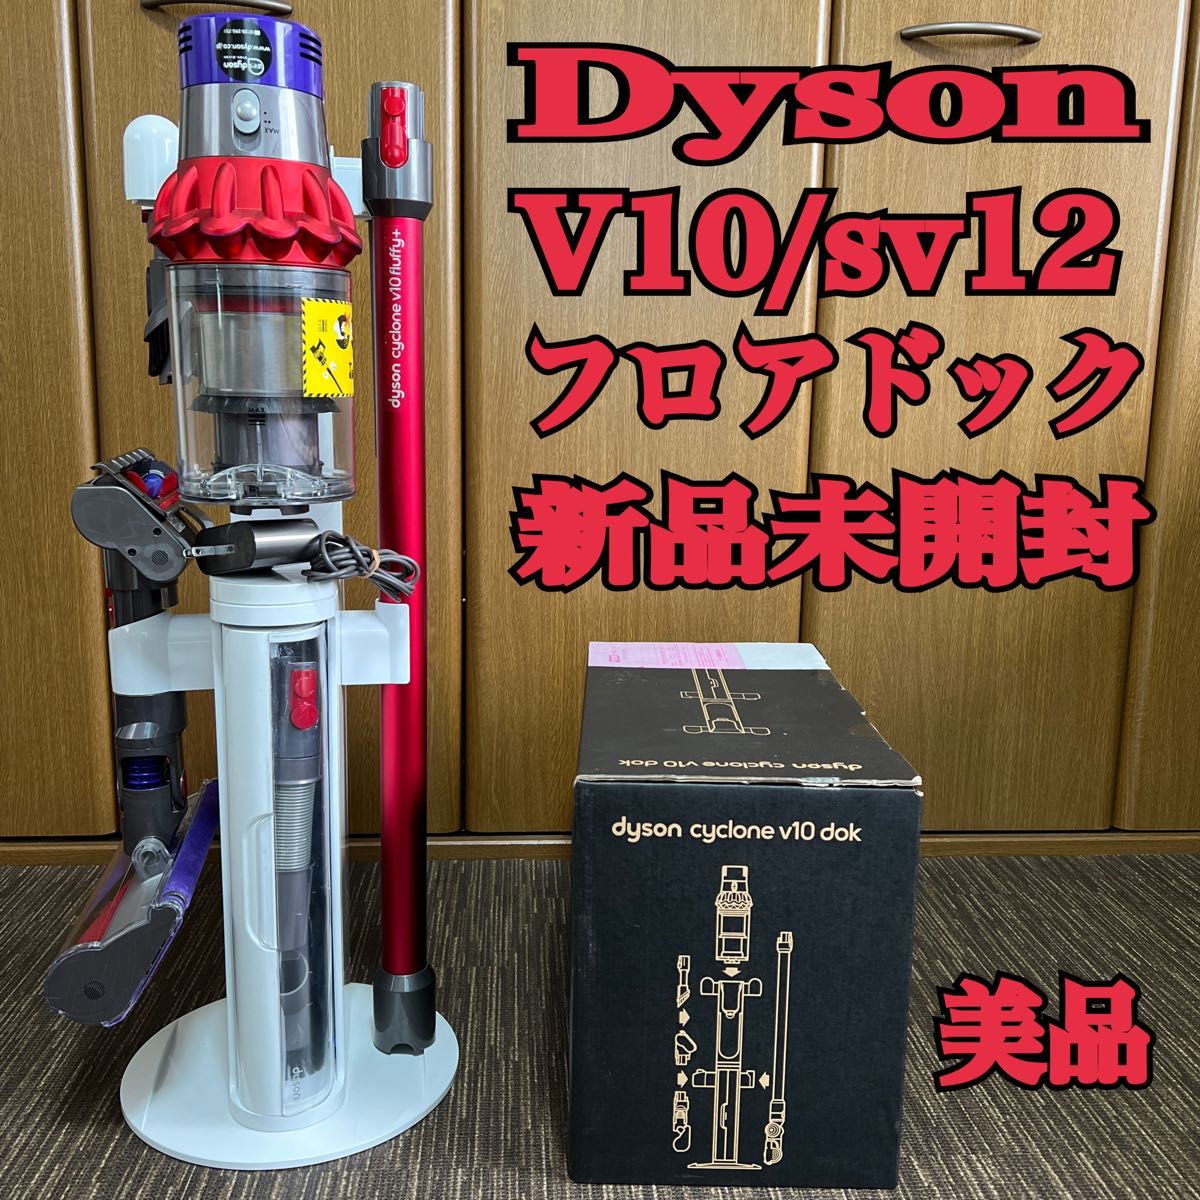 ダイソン cyclone V10 SV12 コードレスクリーナー【値下】 - 生活家電